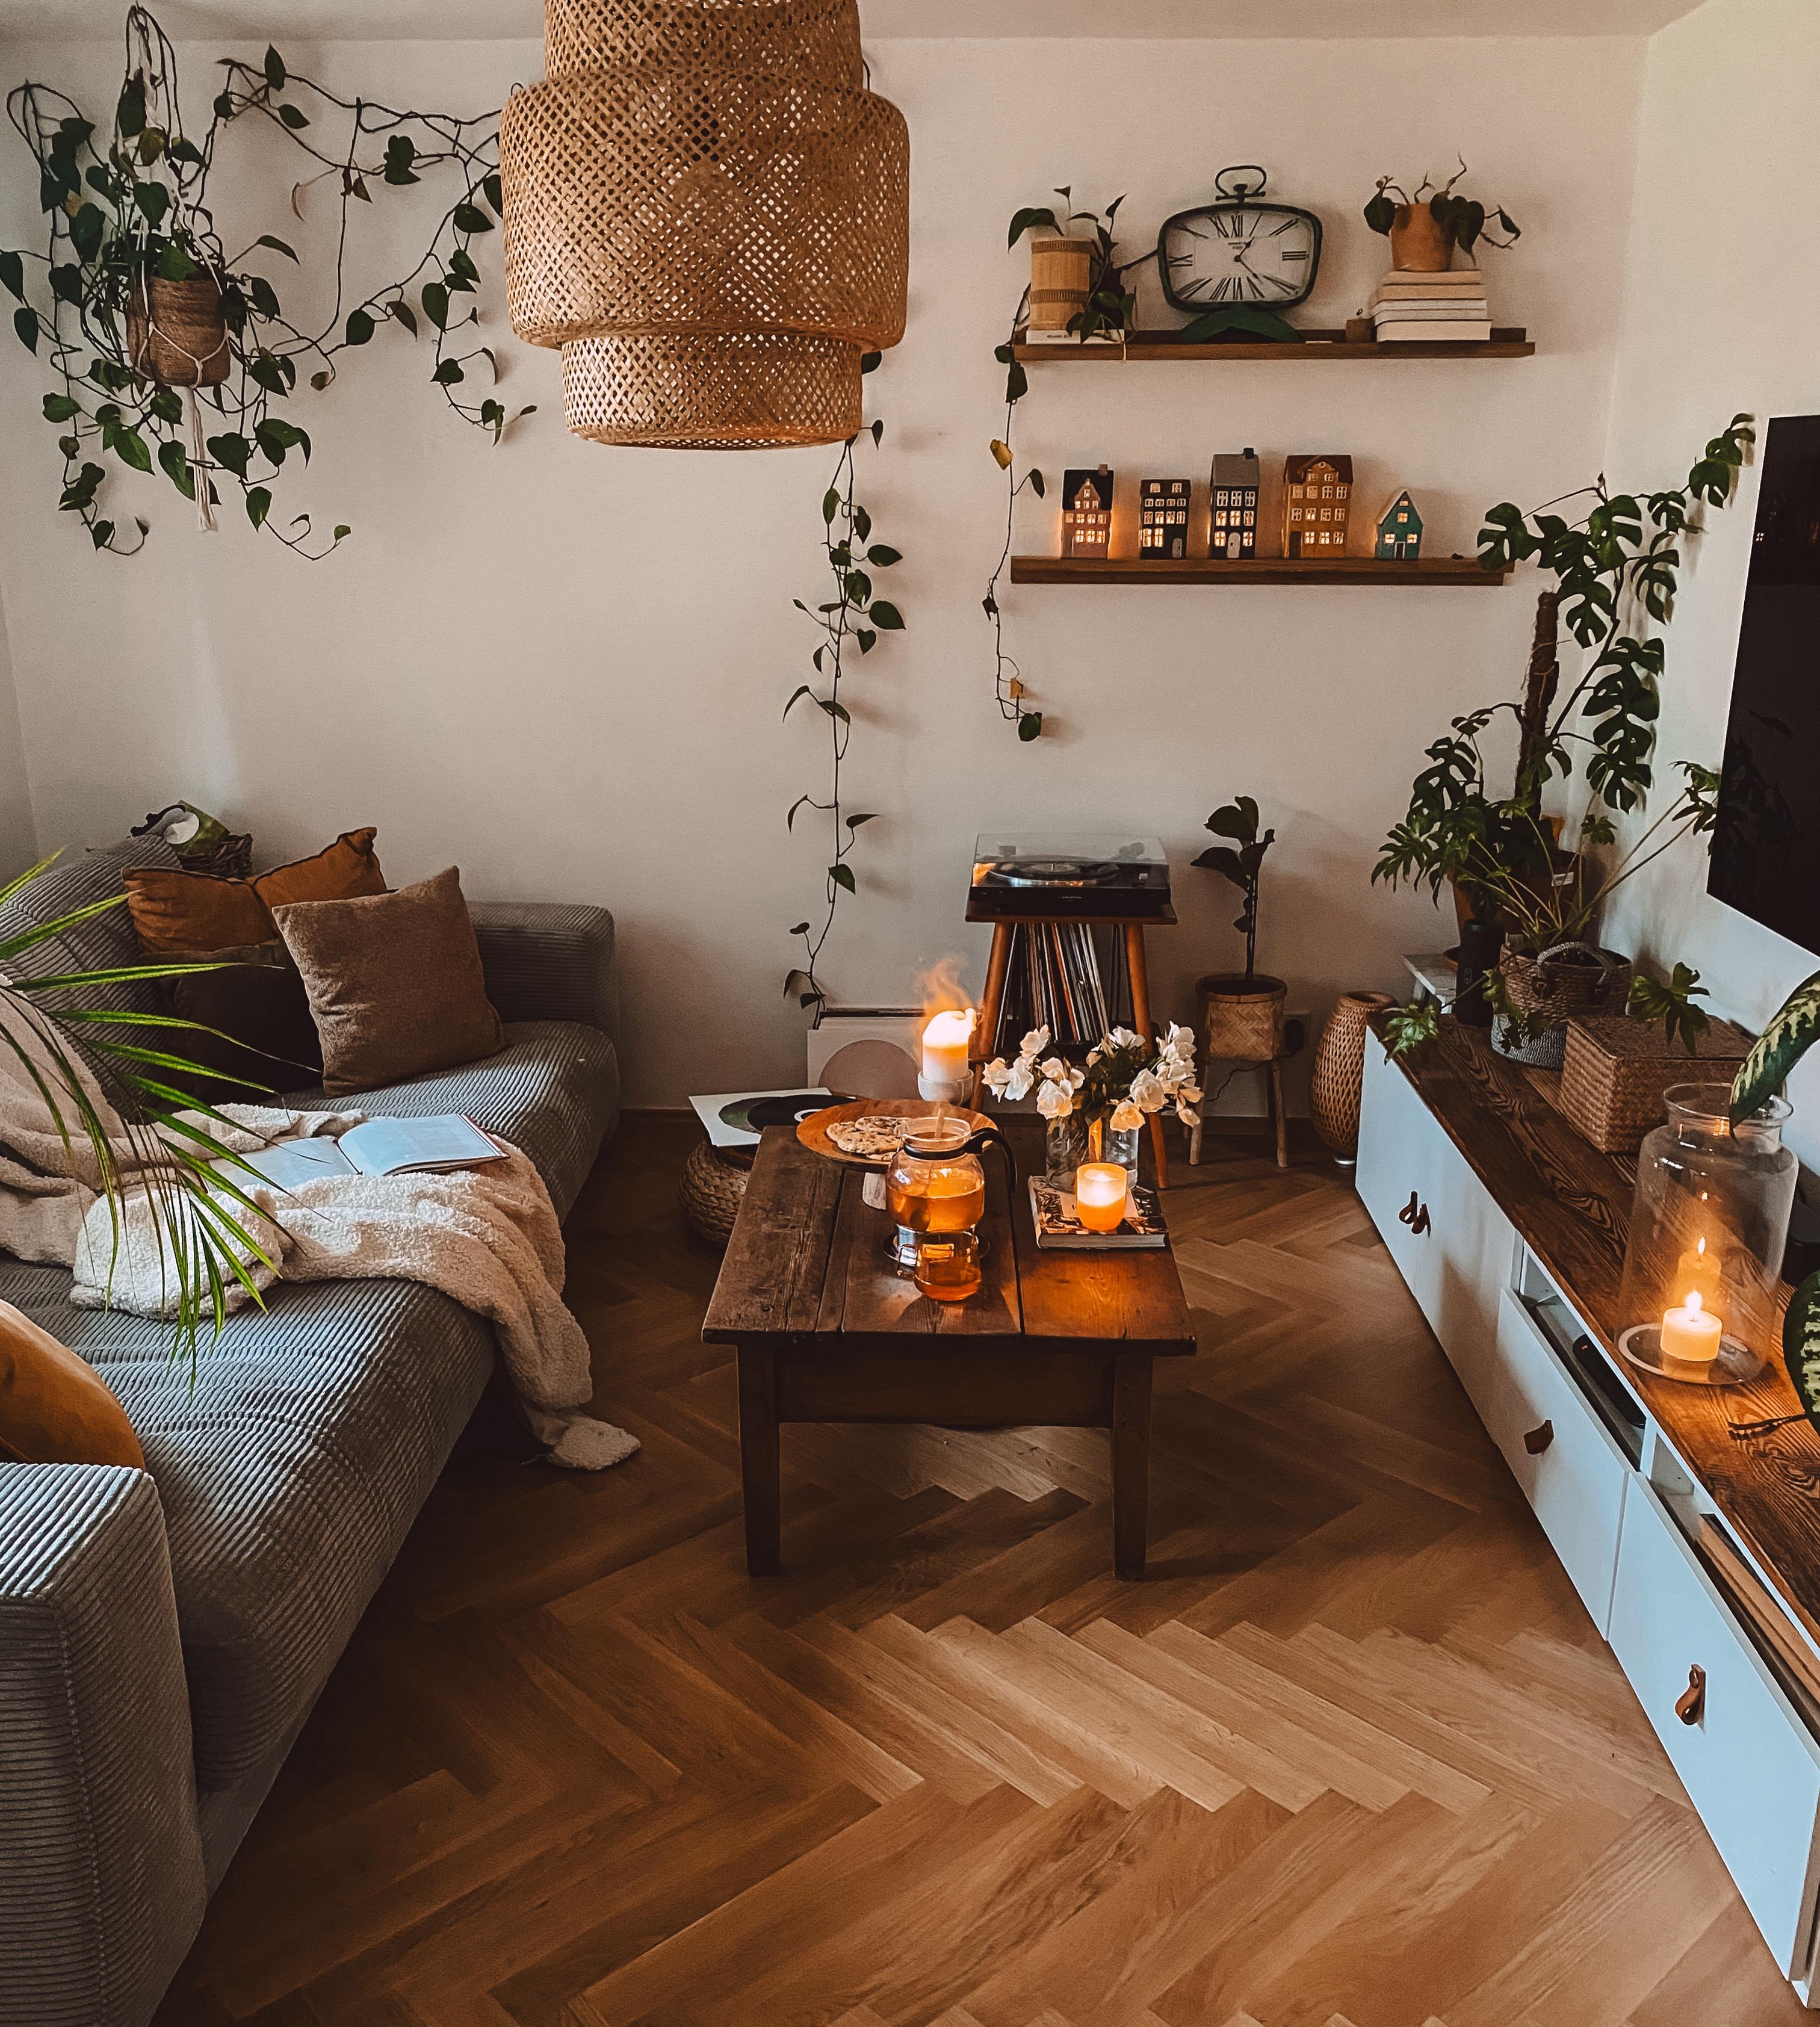 #Wohnzimmer #couch #cordsofa #lichthäuser #pflanzen #boho #vinyl #plattensammlung